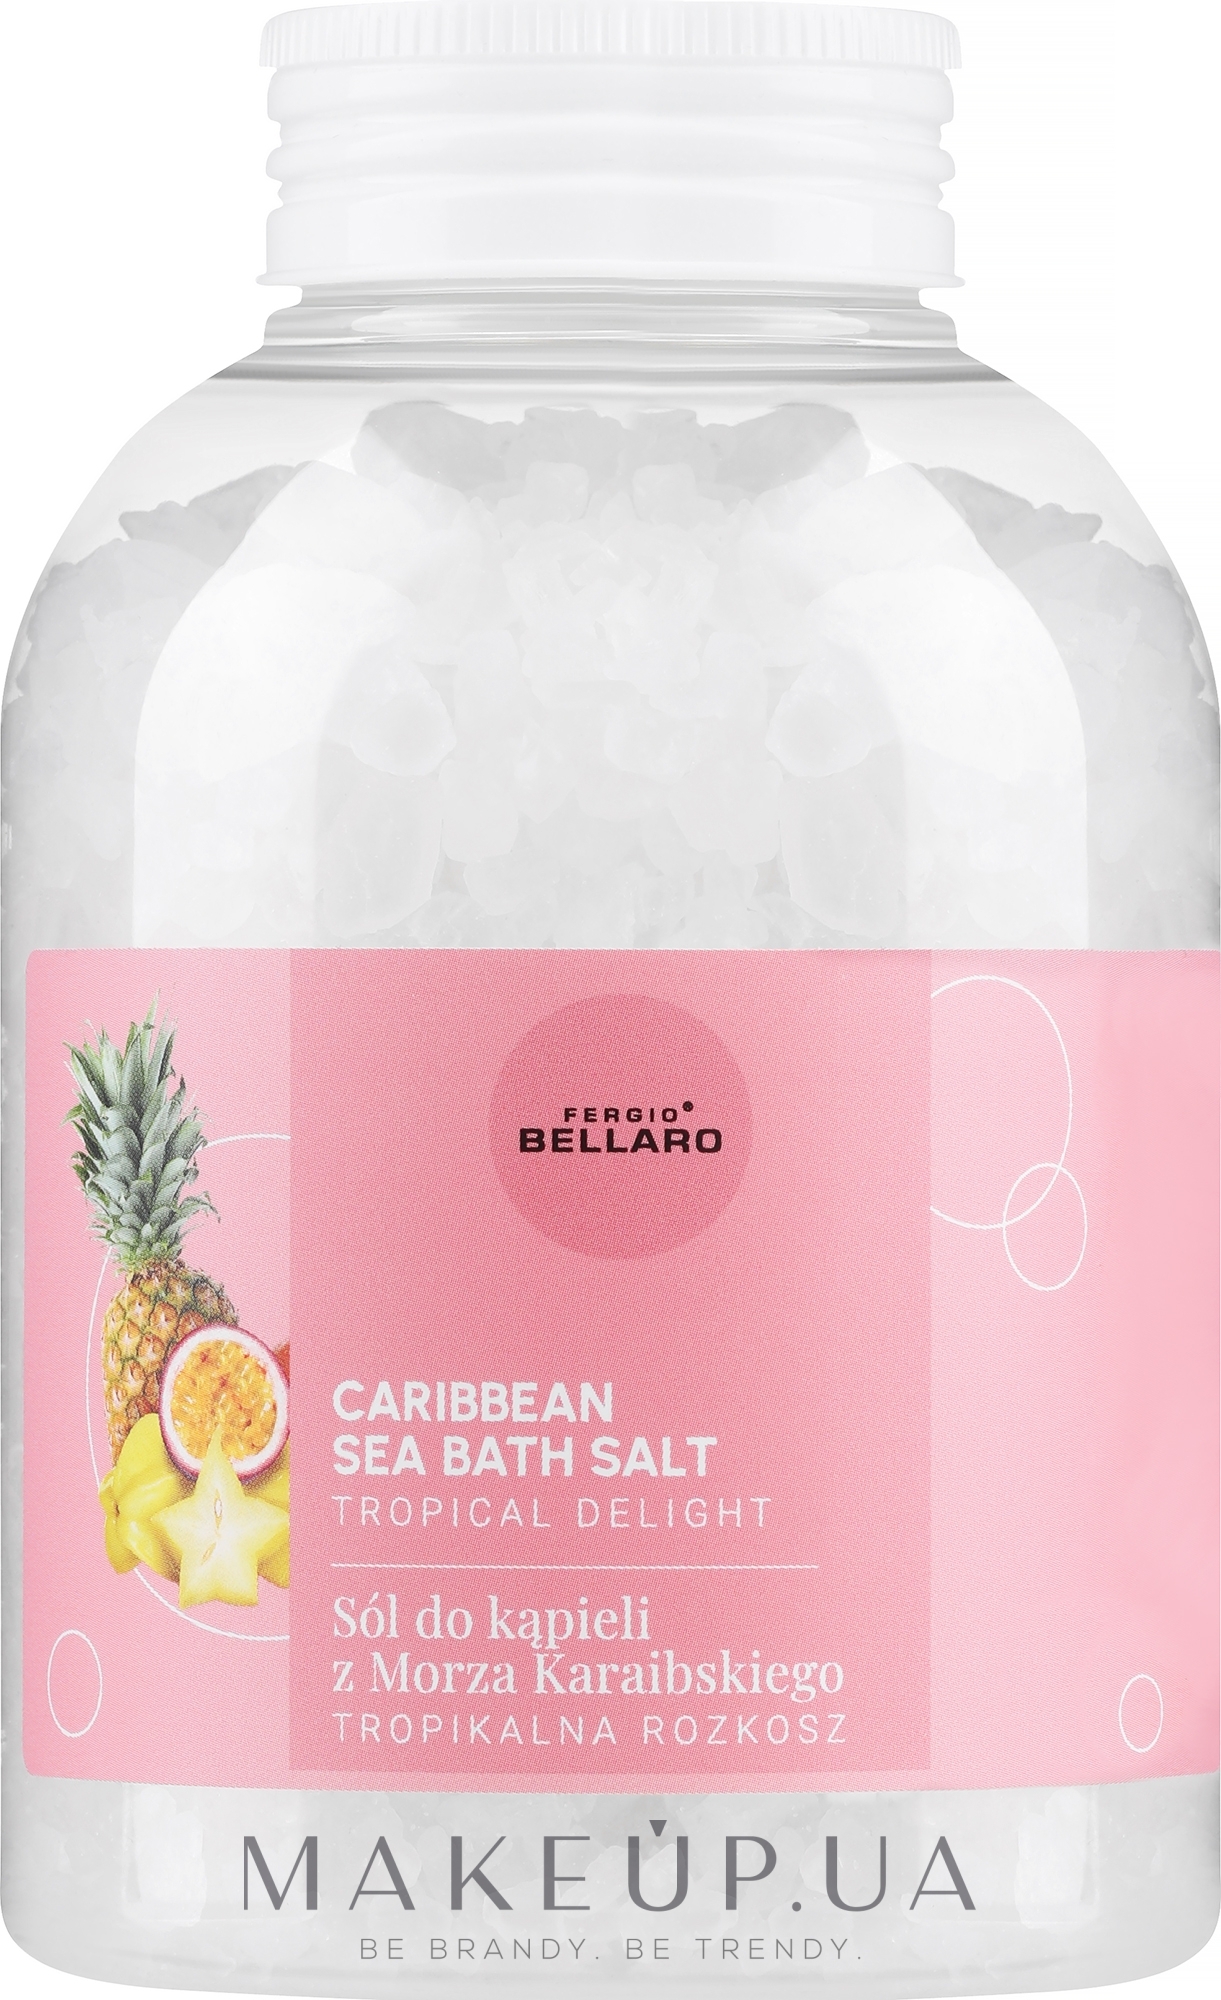 Соль для ванны "Тропическое наслаждение" - Fergio Bellaro Caribbean Sea Bath Salt Tropical Delight — фото 600g